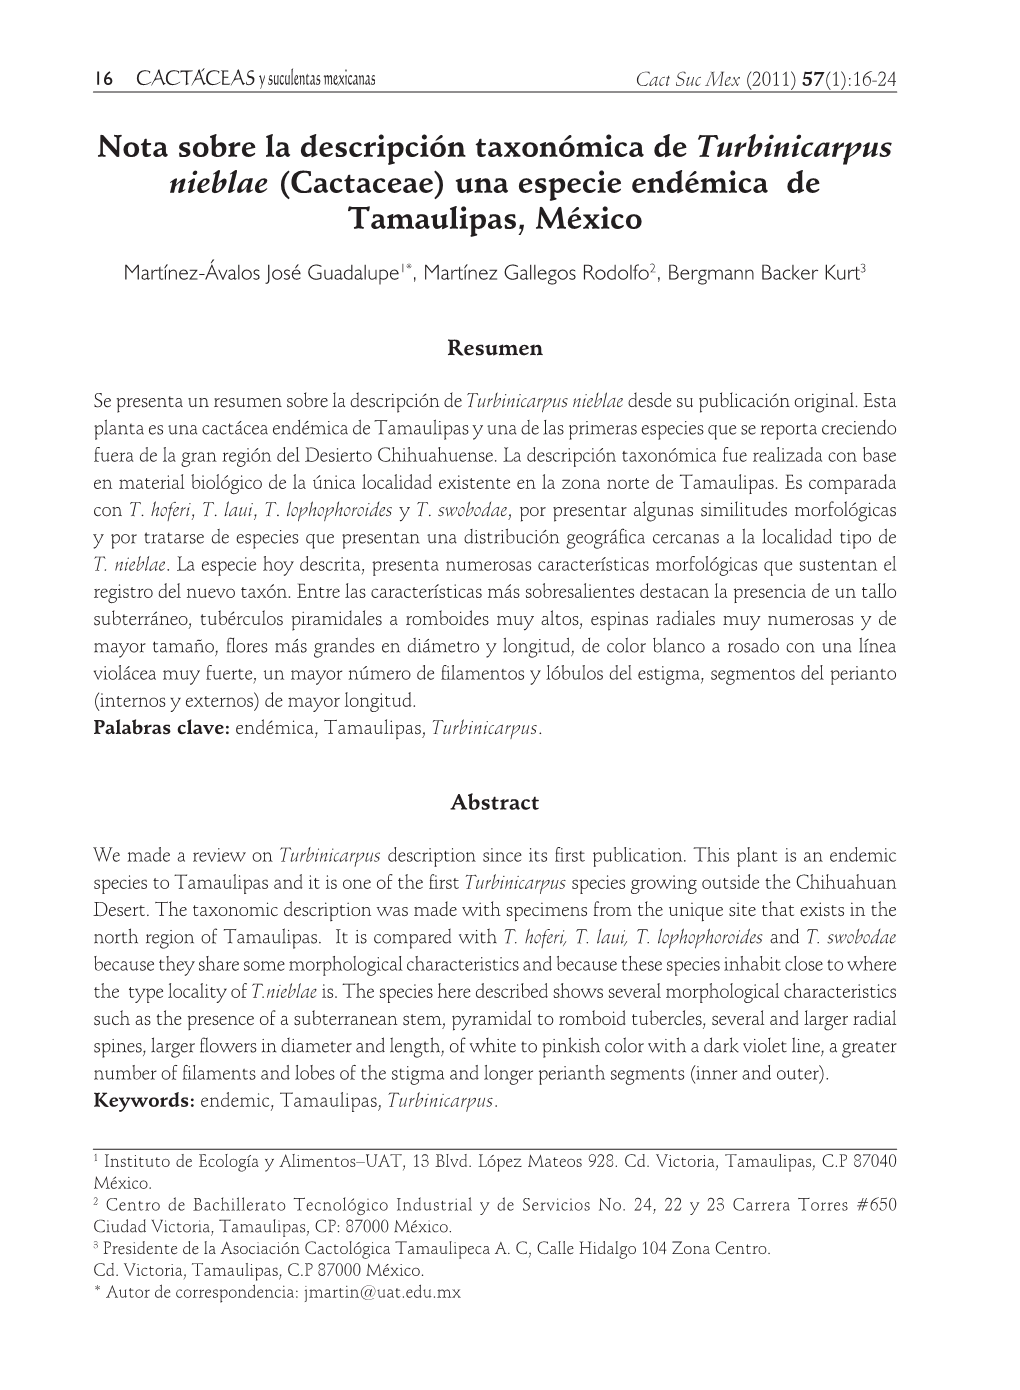 Nota Sobre La Descripción Taxonómica De Turbinicarpus Nieblae (Cactaceae) Una Especie Endémica De Tamaulipas, México